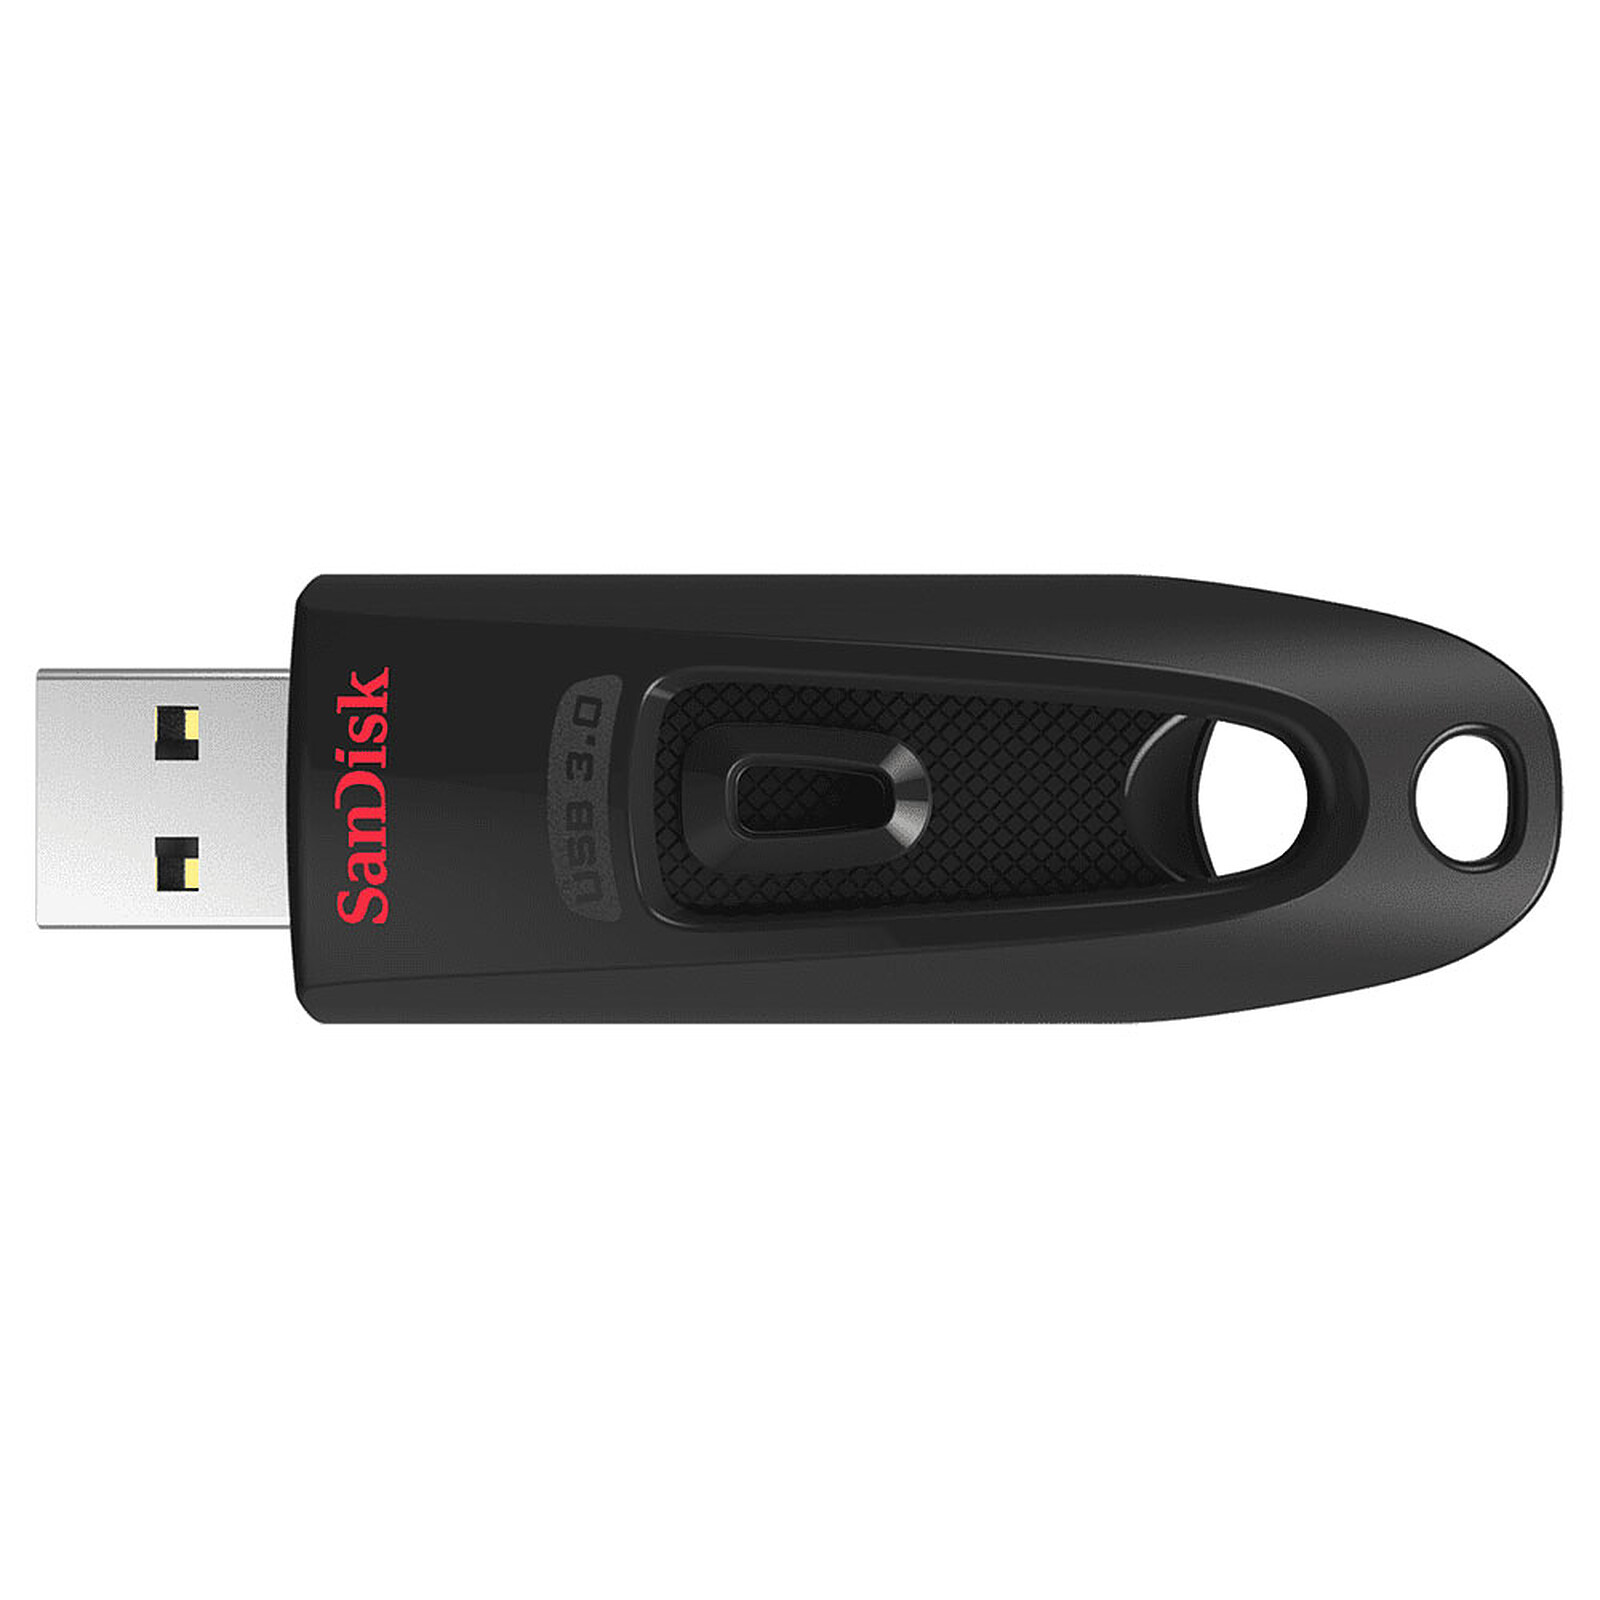 Clé USB 3.0 haute vitesse pour téléphone portable, clé USB en